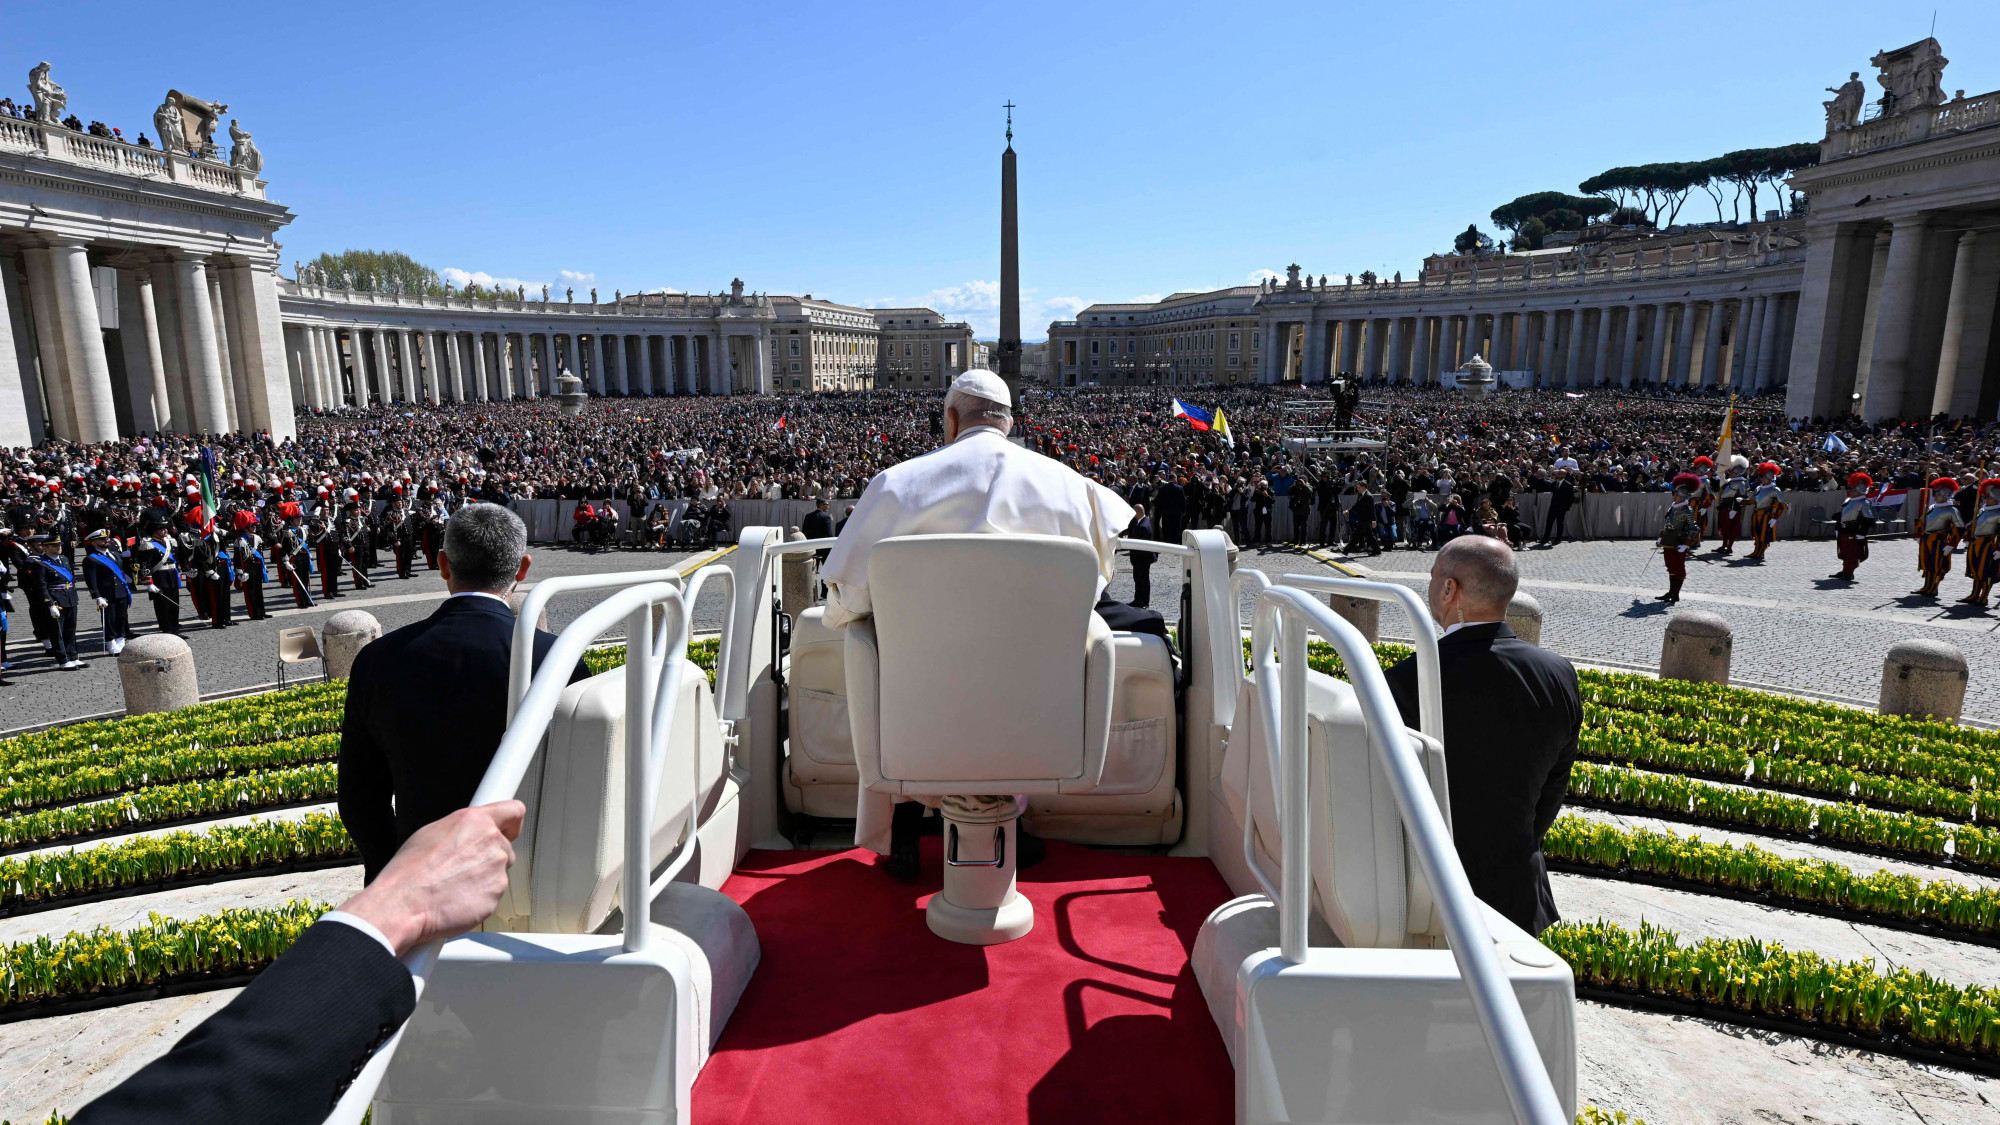 A Vatikán szerint a nemátalakító műtétek, a béranyaság és a genderelmélet sértik az emberi méltóságot